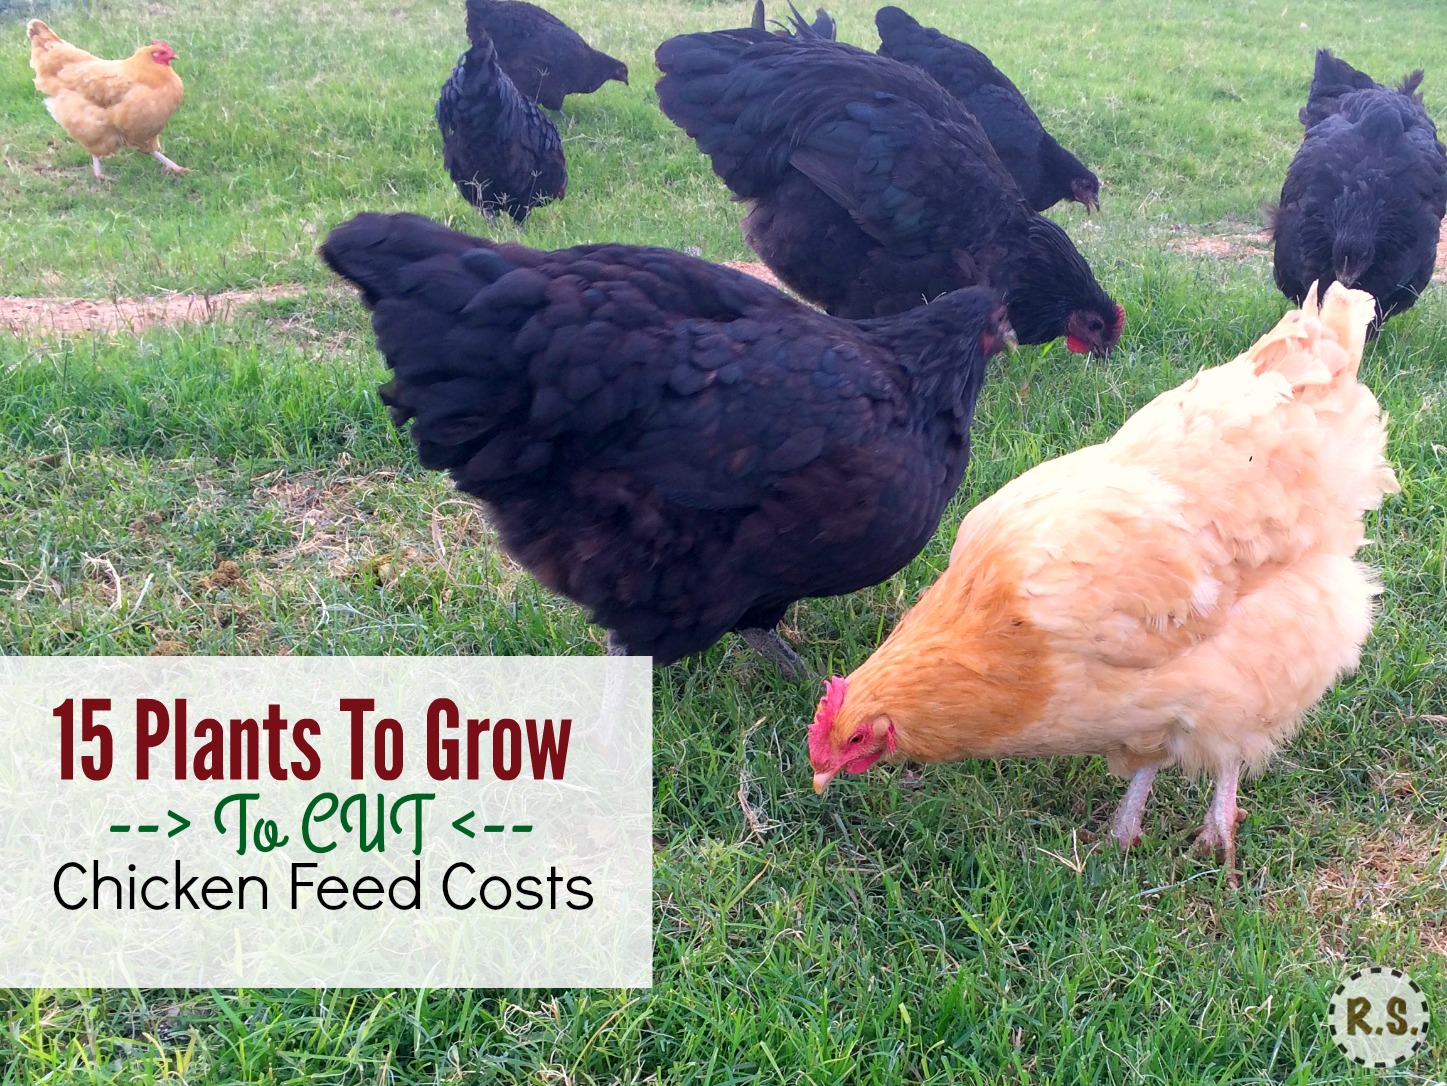 pěstujte své kuřecí jídlo na dvorku v DIY trvalé permakulturní zahradě. Volný stín pro kuřata v jedlé krajině přímo před jejich kurníkem. Pěstování kuřecího jídla vám ušetří peníze.